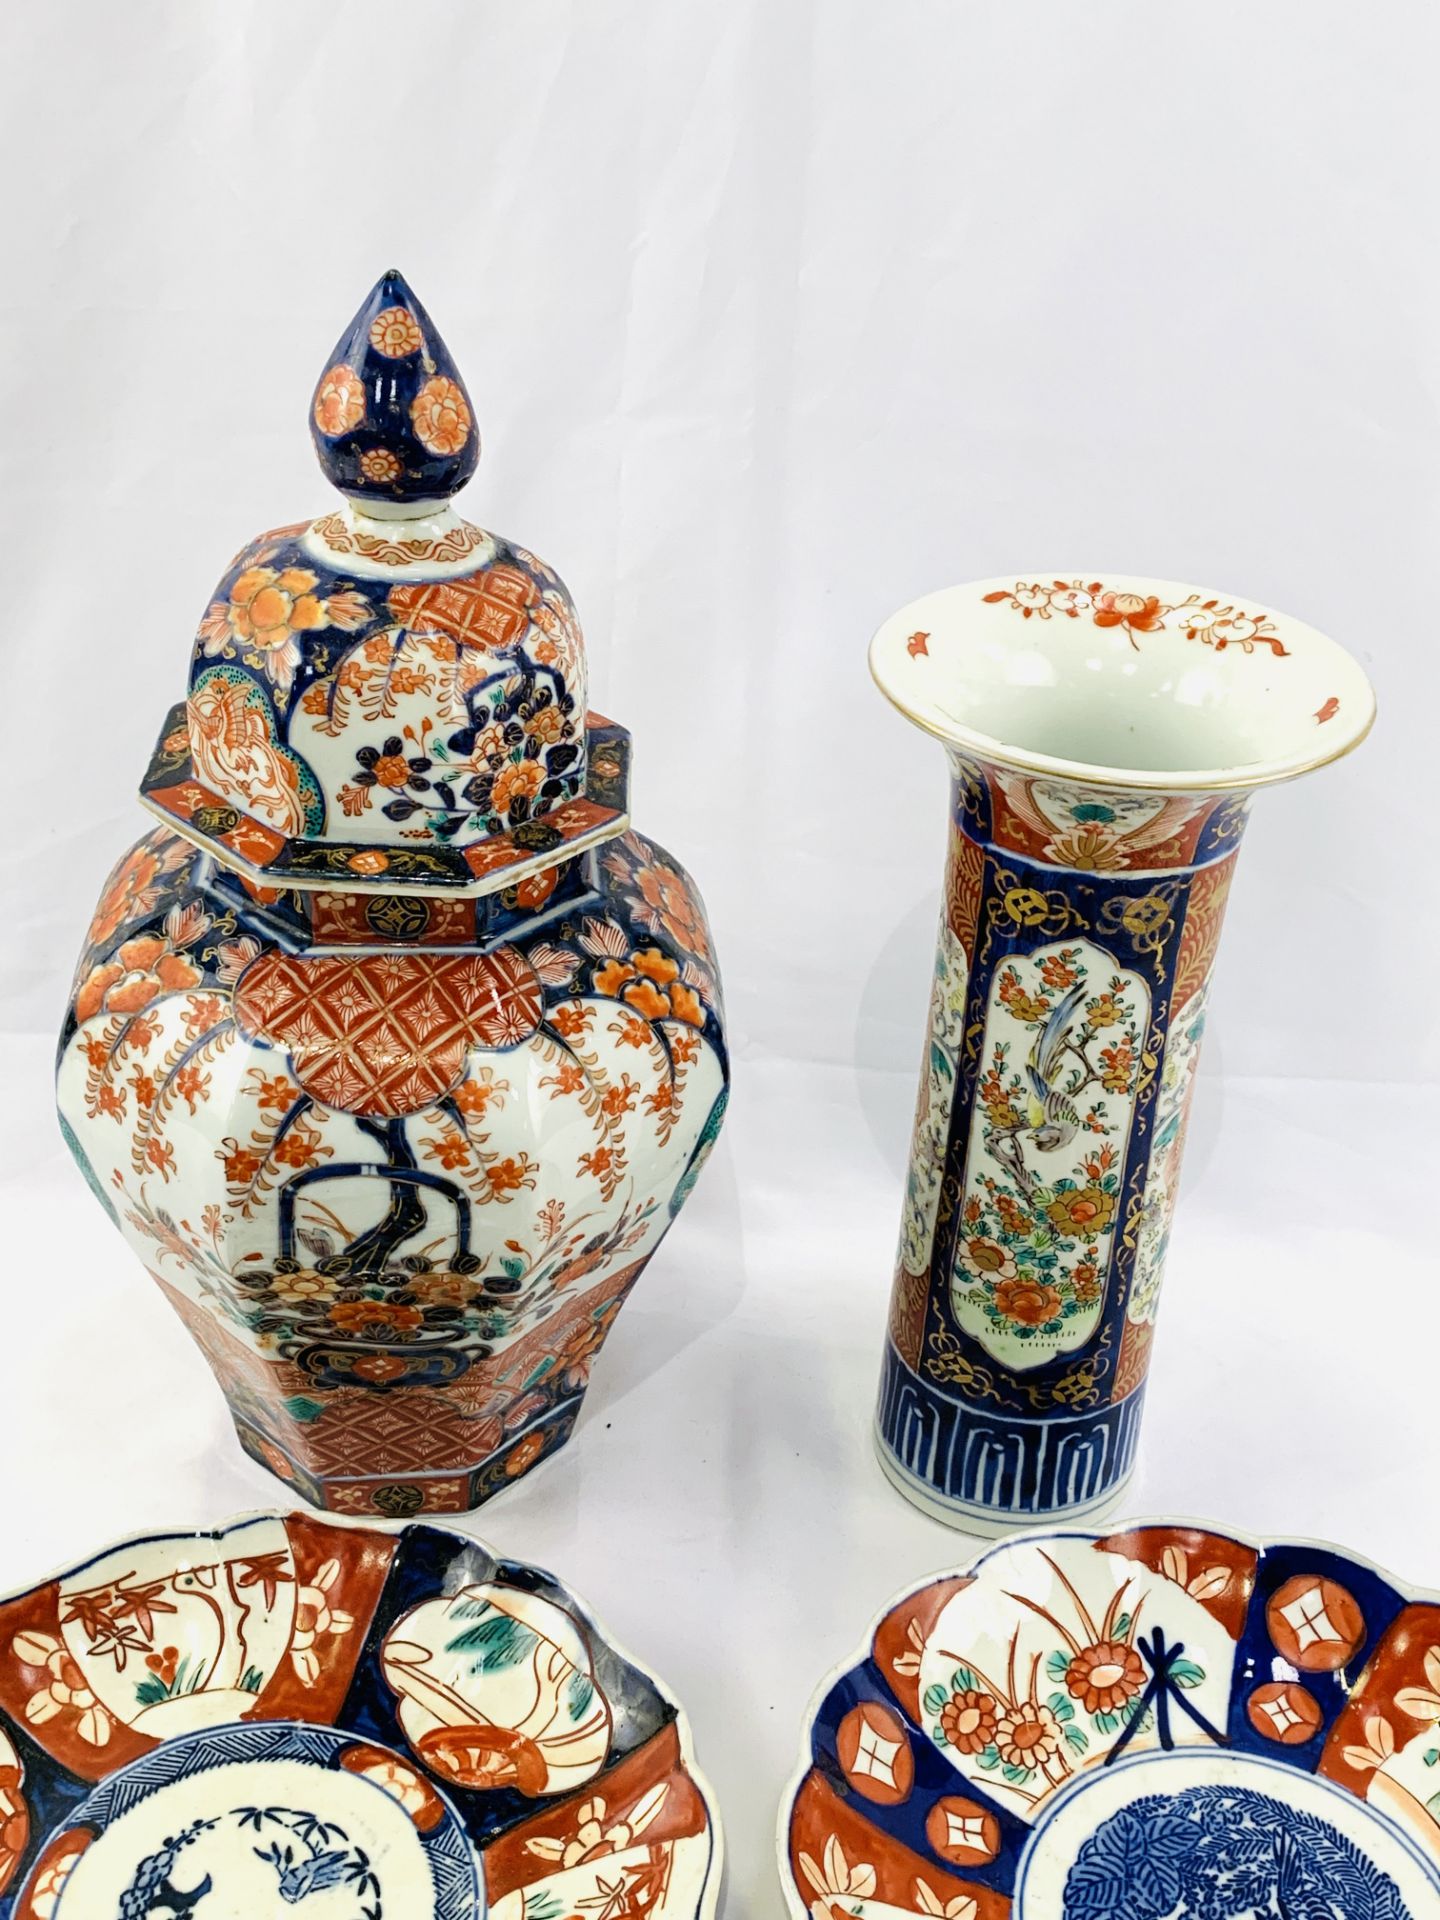 Large lidded Imari jar, Imari vase, and three Imari plates - Image 4 of 6